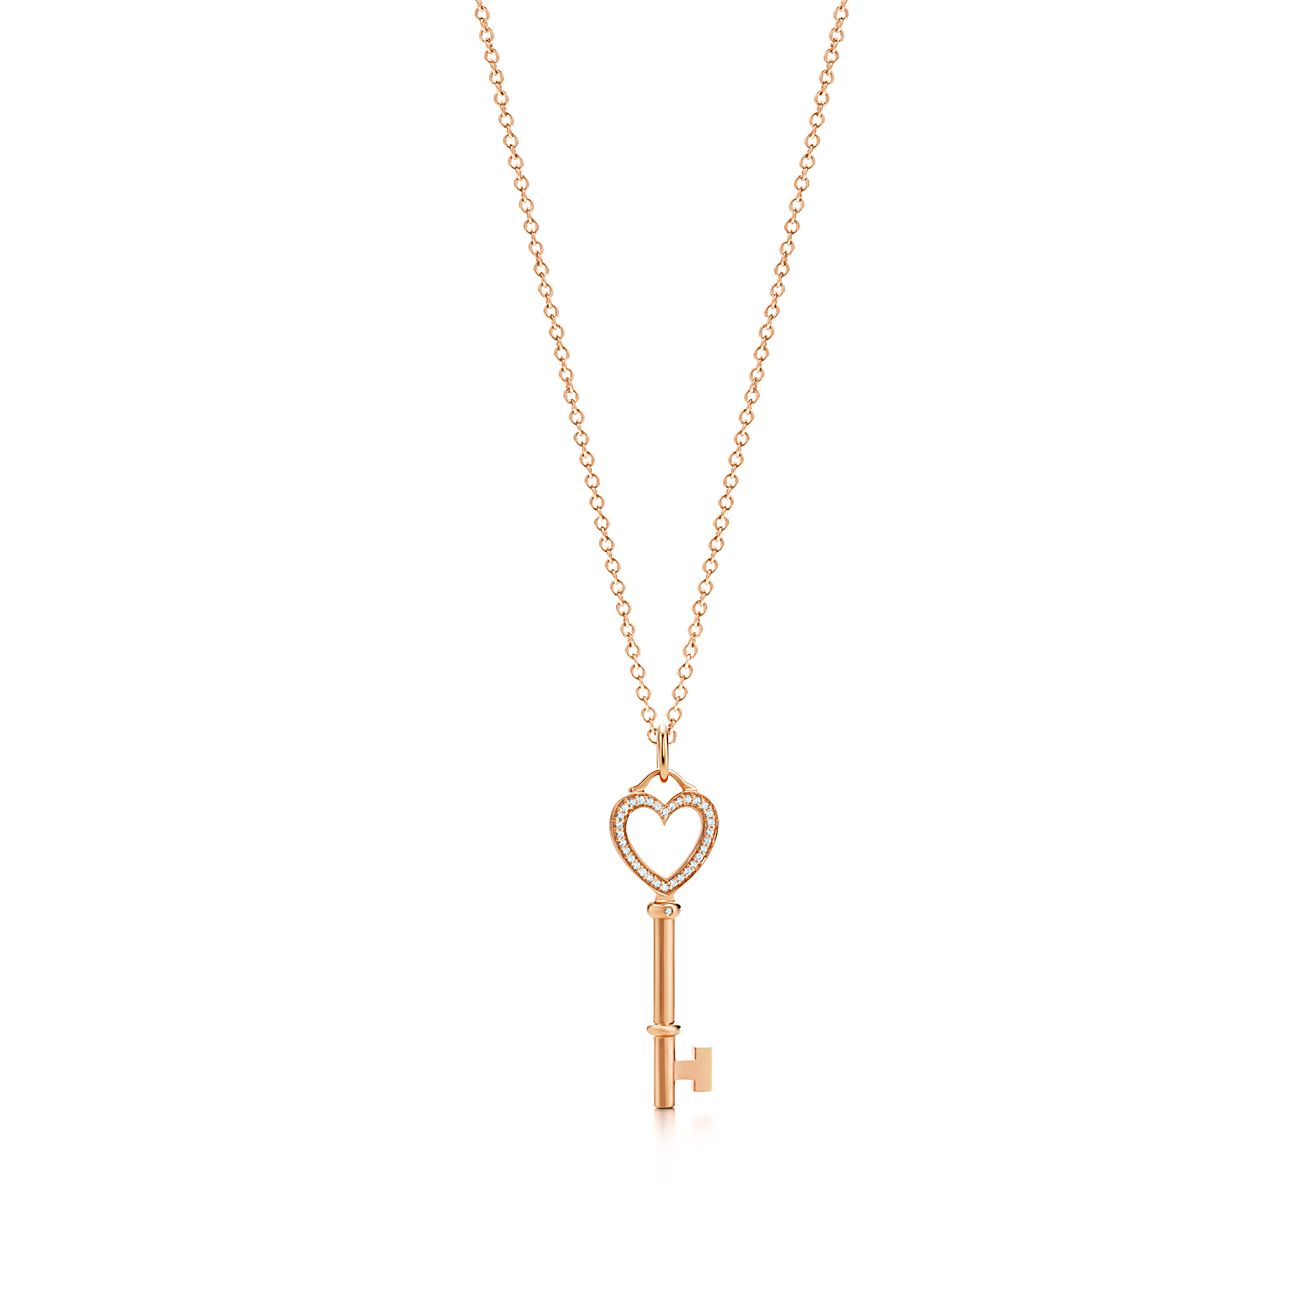 tiffany necklace key and heart